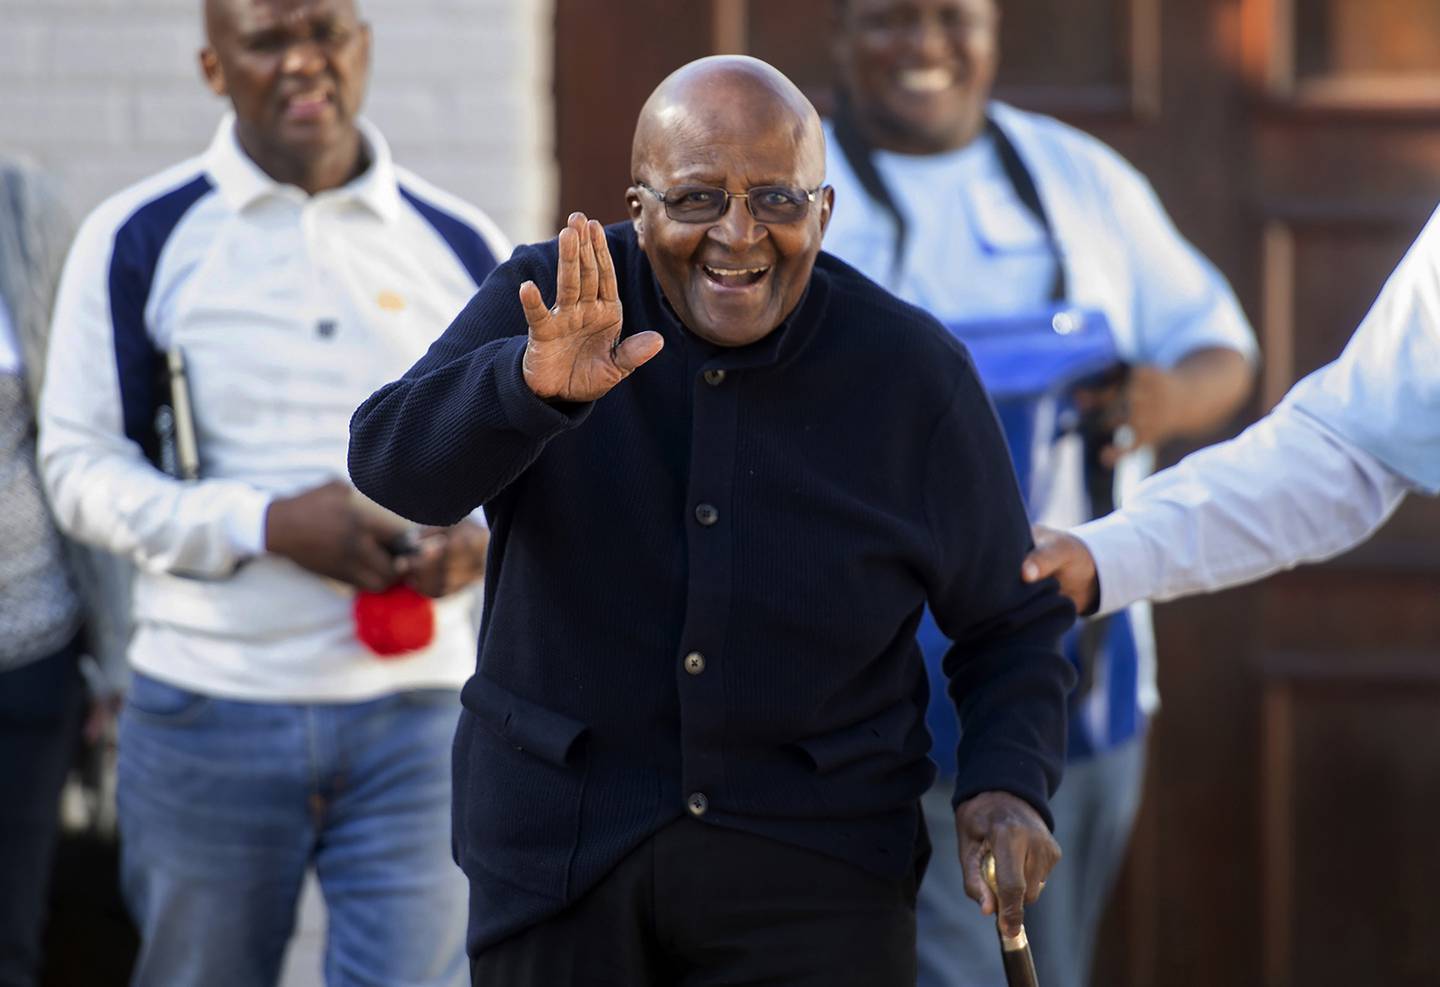 Tutu feirer 90-årsdagen sin torsdag i Cape Town. Fredsprisvinneren trakk seg tilbake fra offentligheten i 2010. Arkivfoto: AP / NTB 